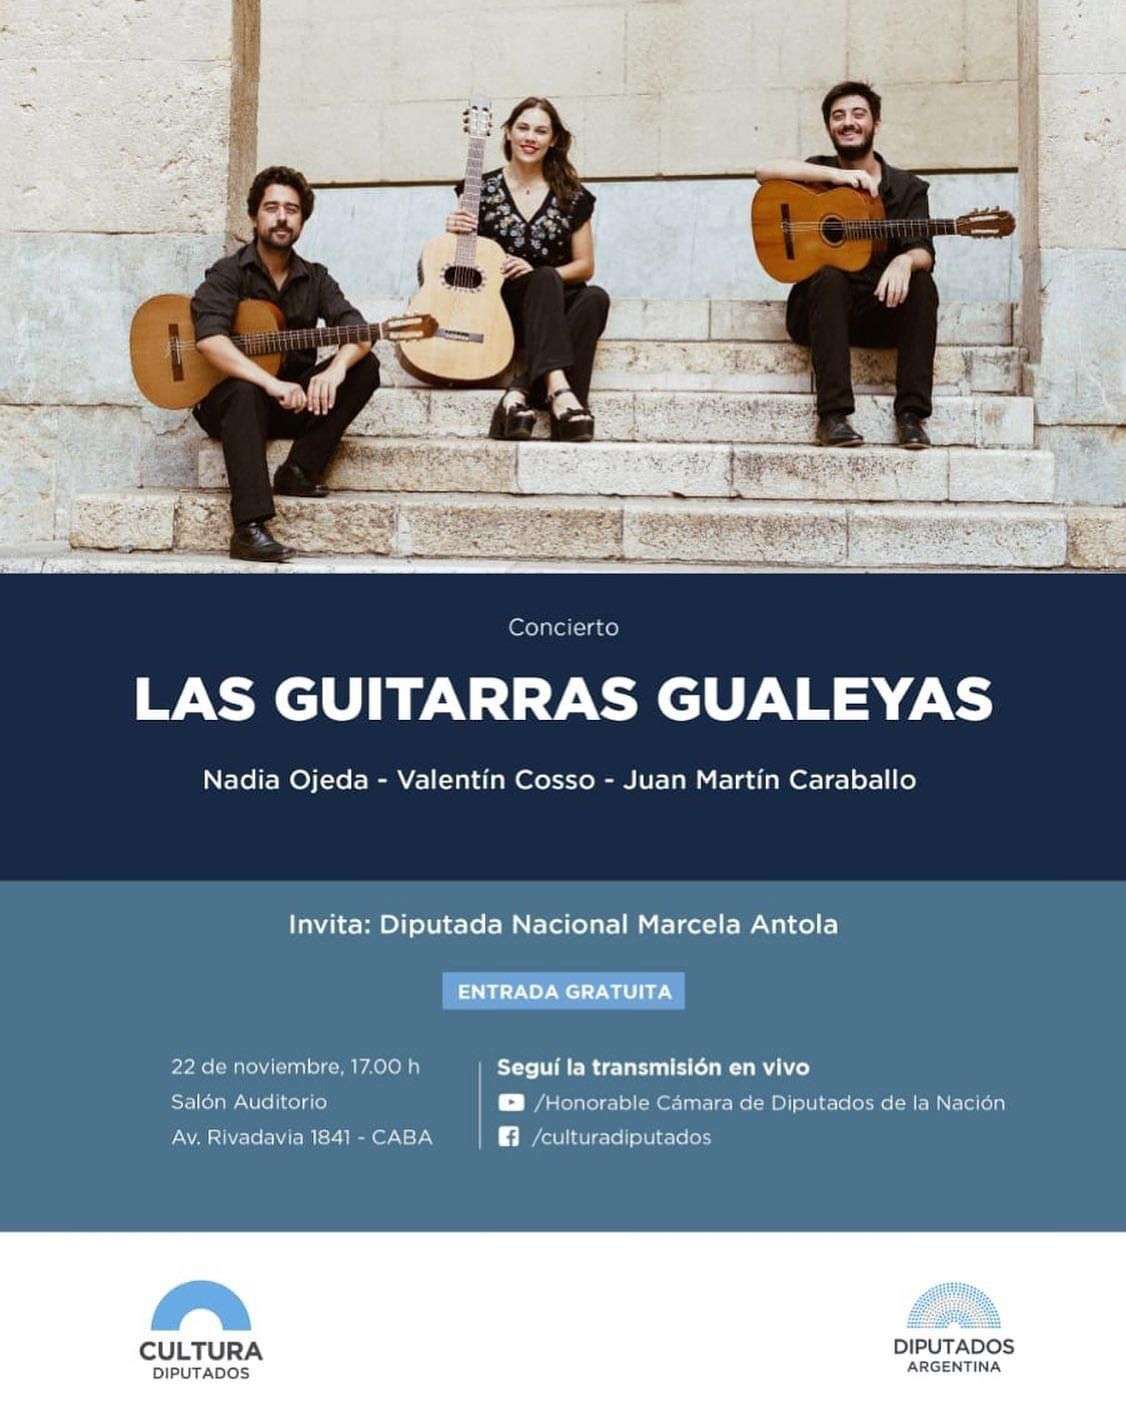 La Diputada Antola invita al concierto de Las Guitarras Gualeyas, en el Congreso